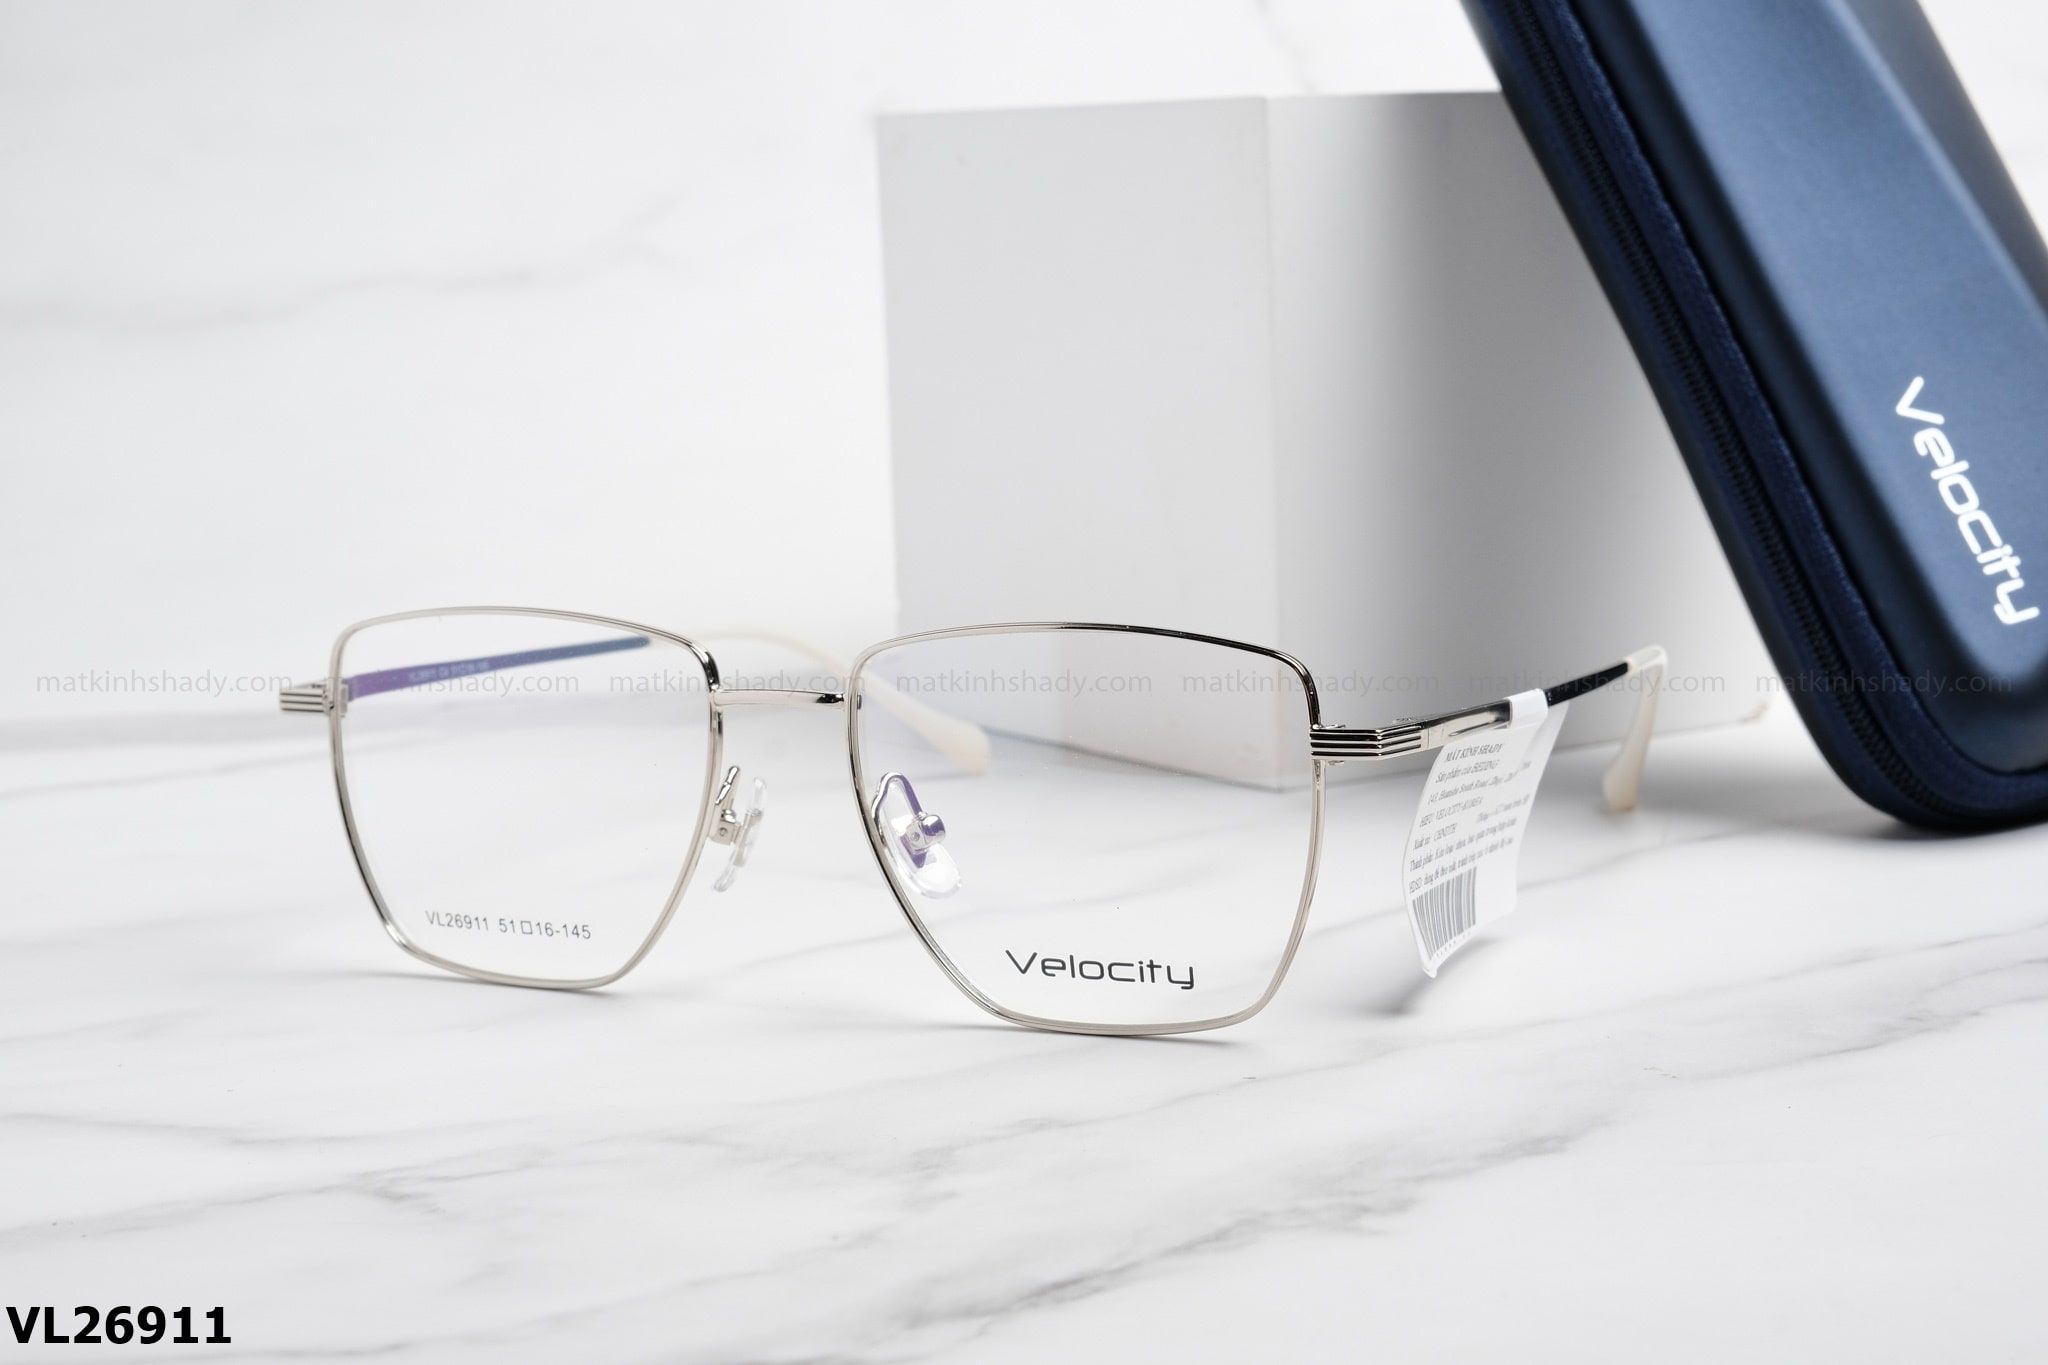  Velocity Eyewear - Glasses - VL26911 